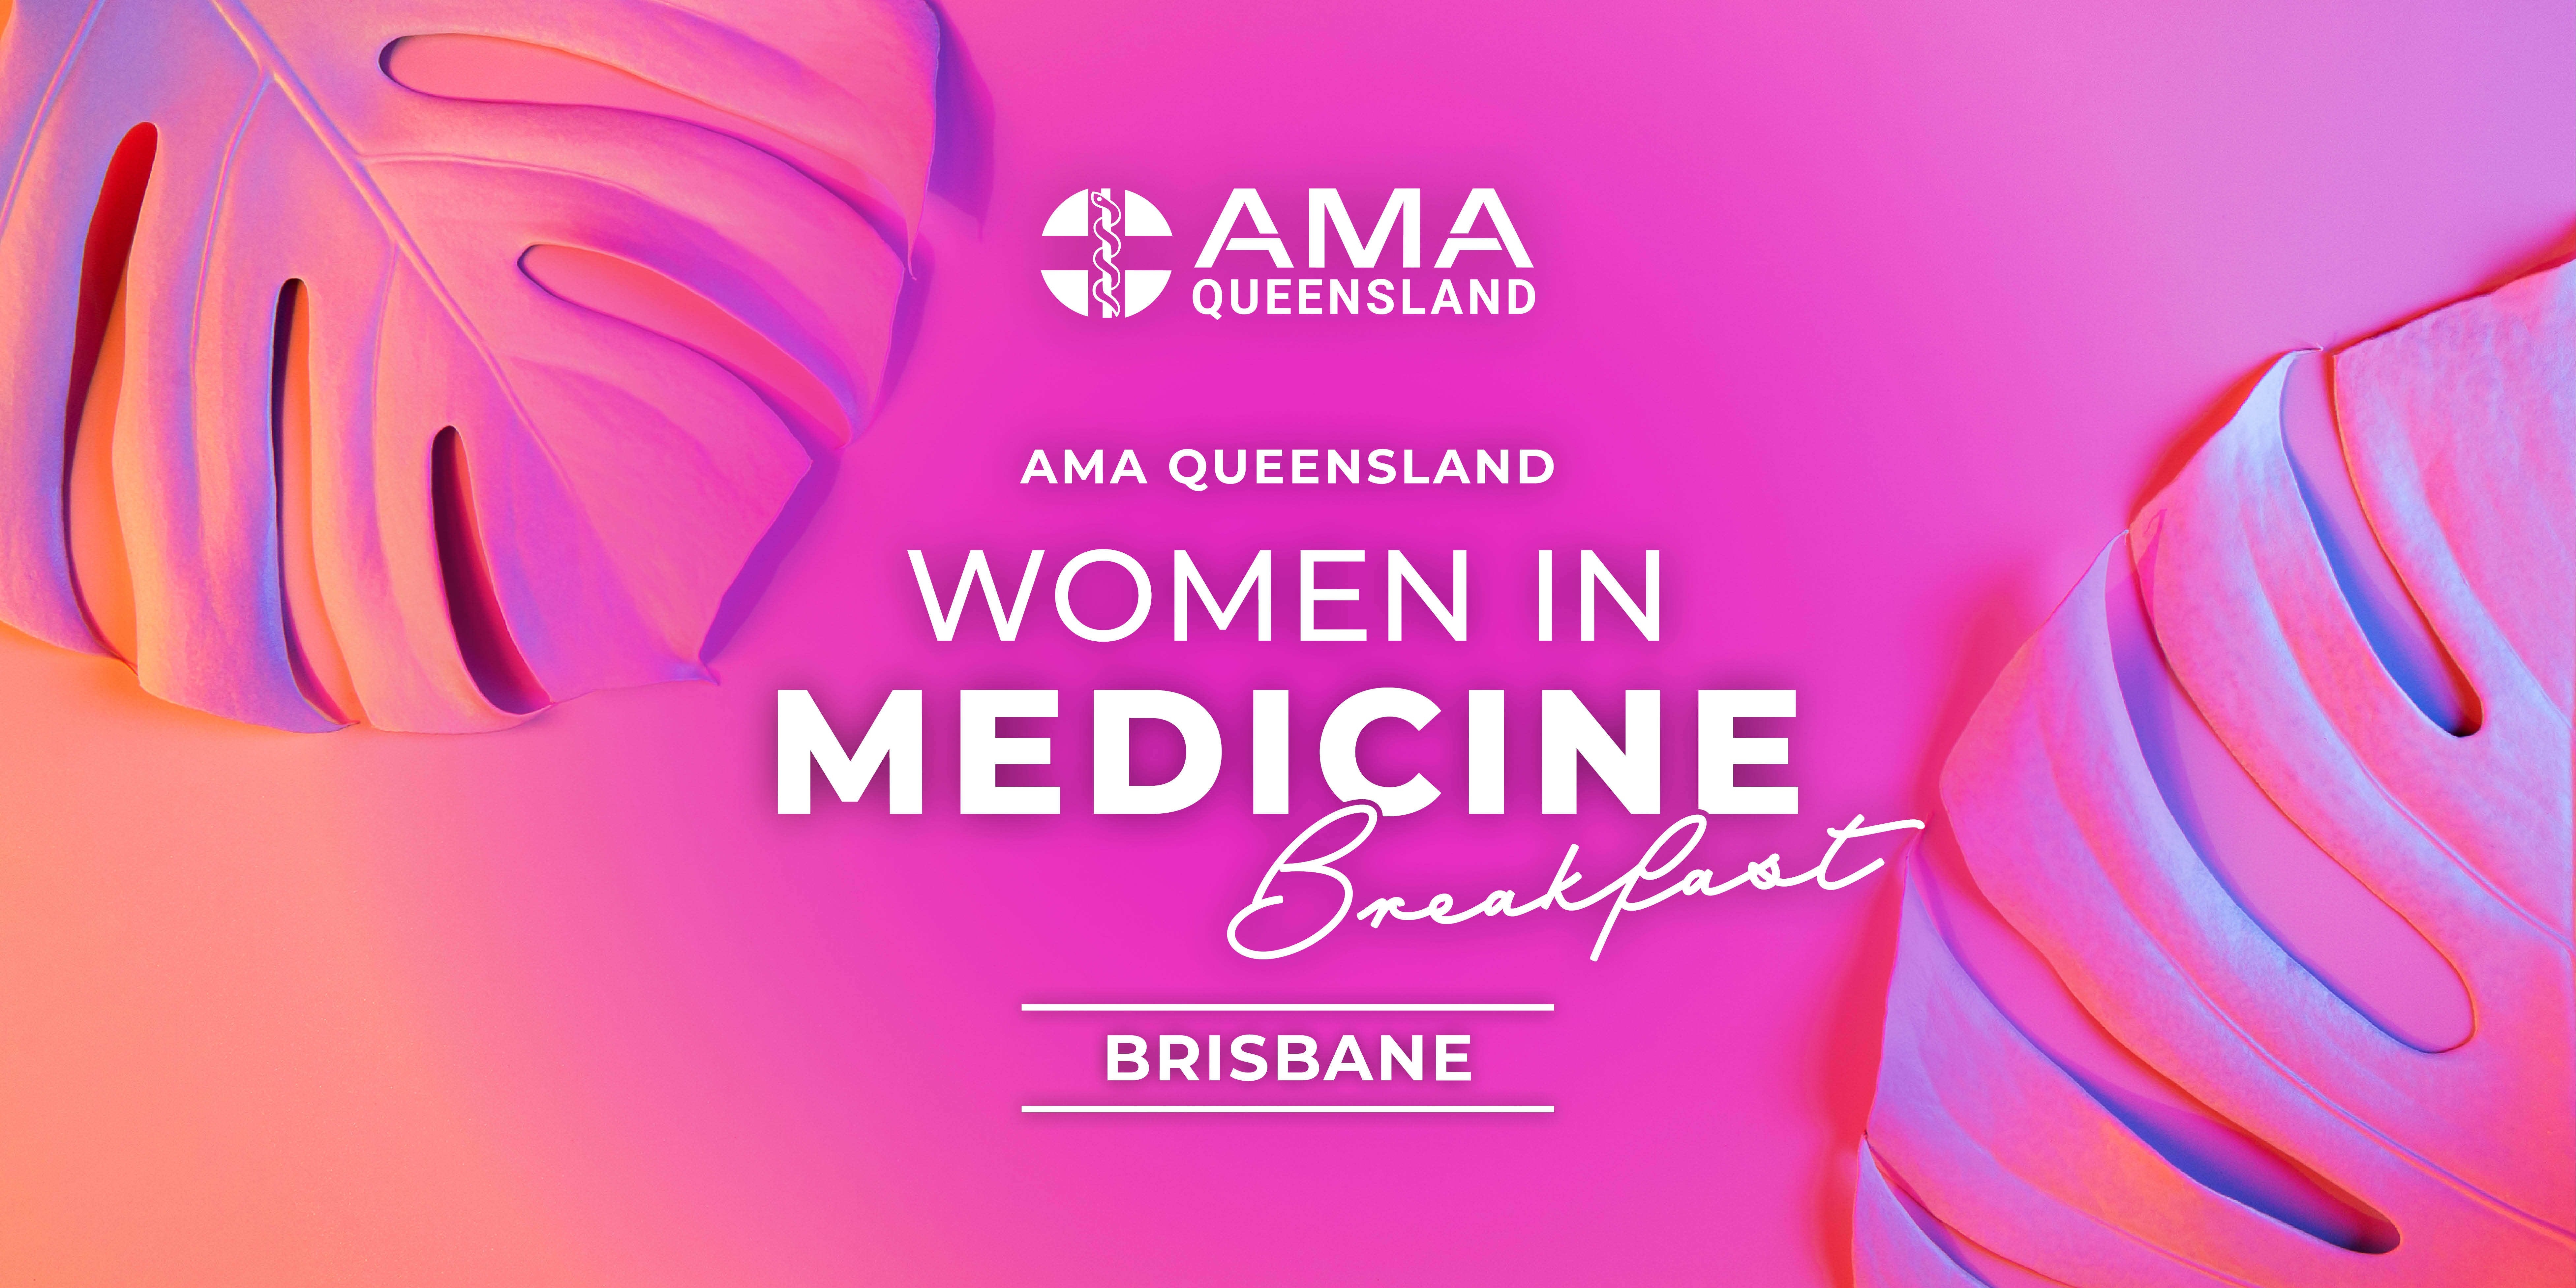 Women in Medicine Breakfast - Brisbane